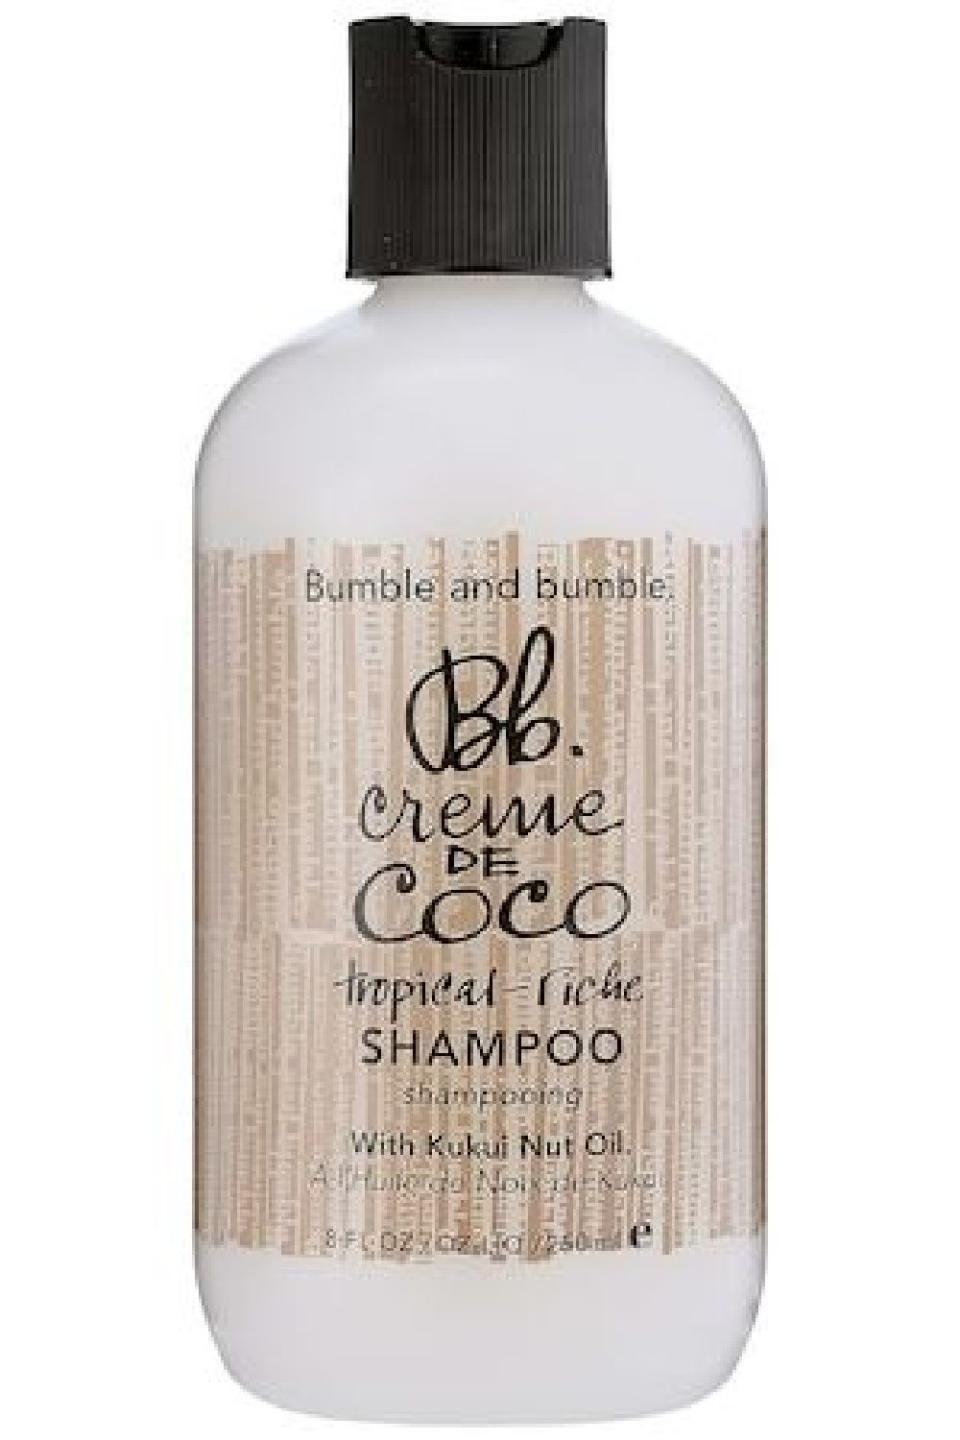 11) Bumble and bumble Creme de Coco Shampoo